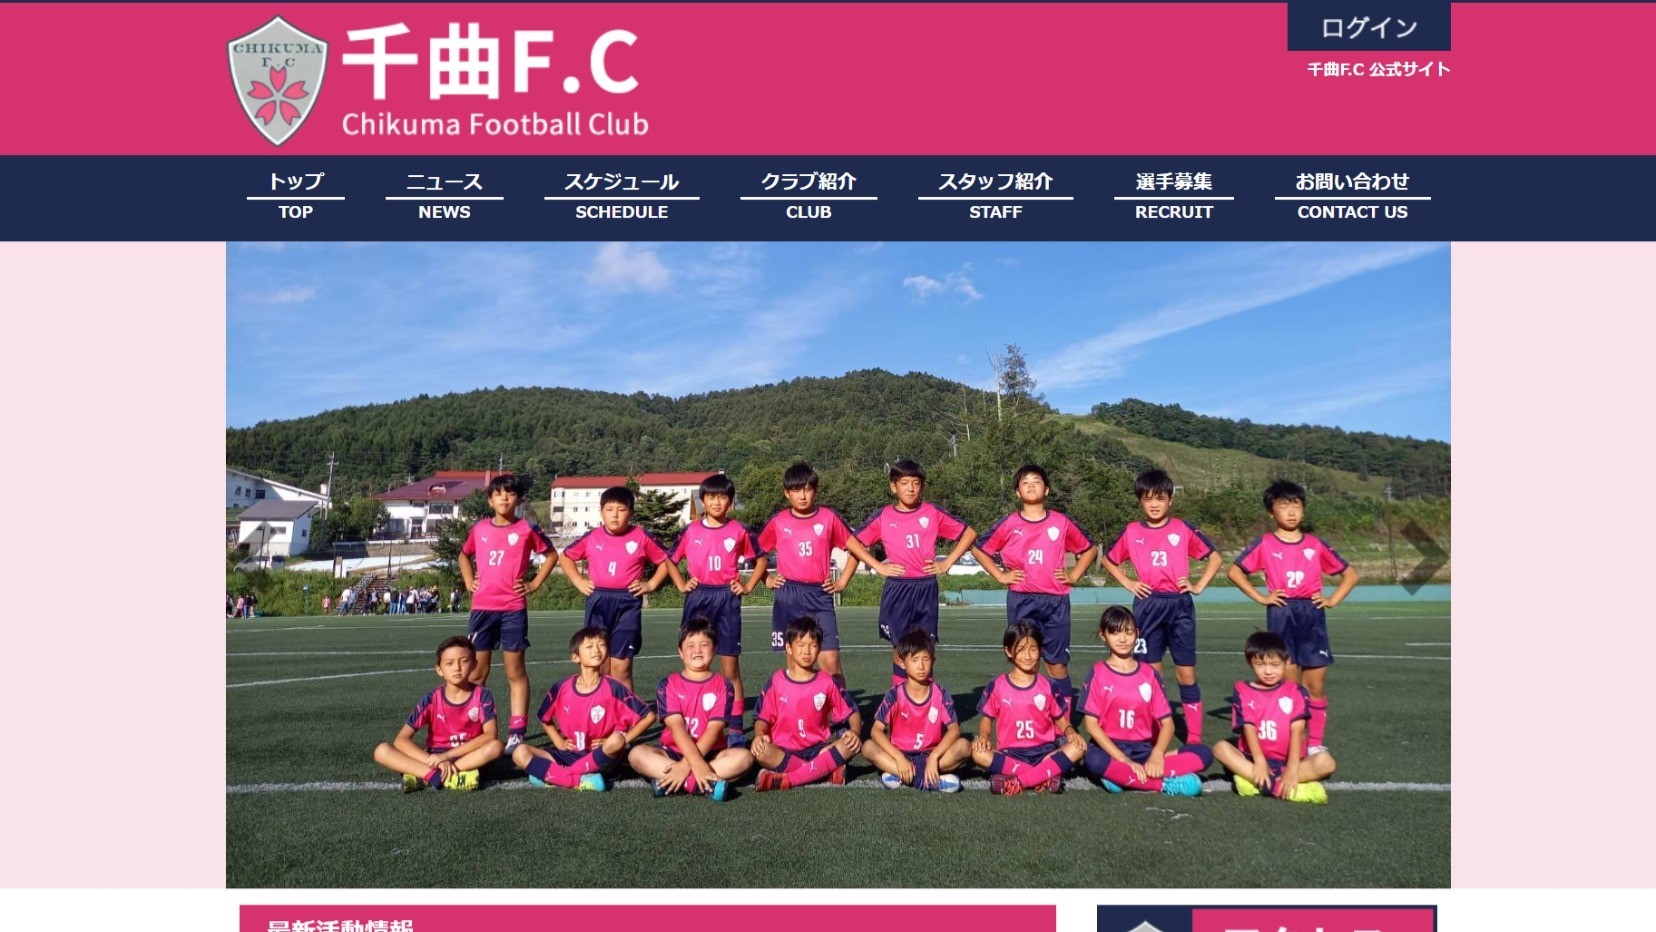 【千曲F.C様】フットボールナビホームページが公開されました！